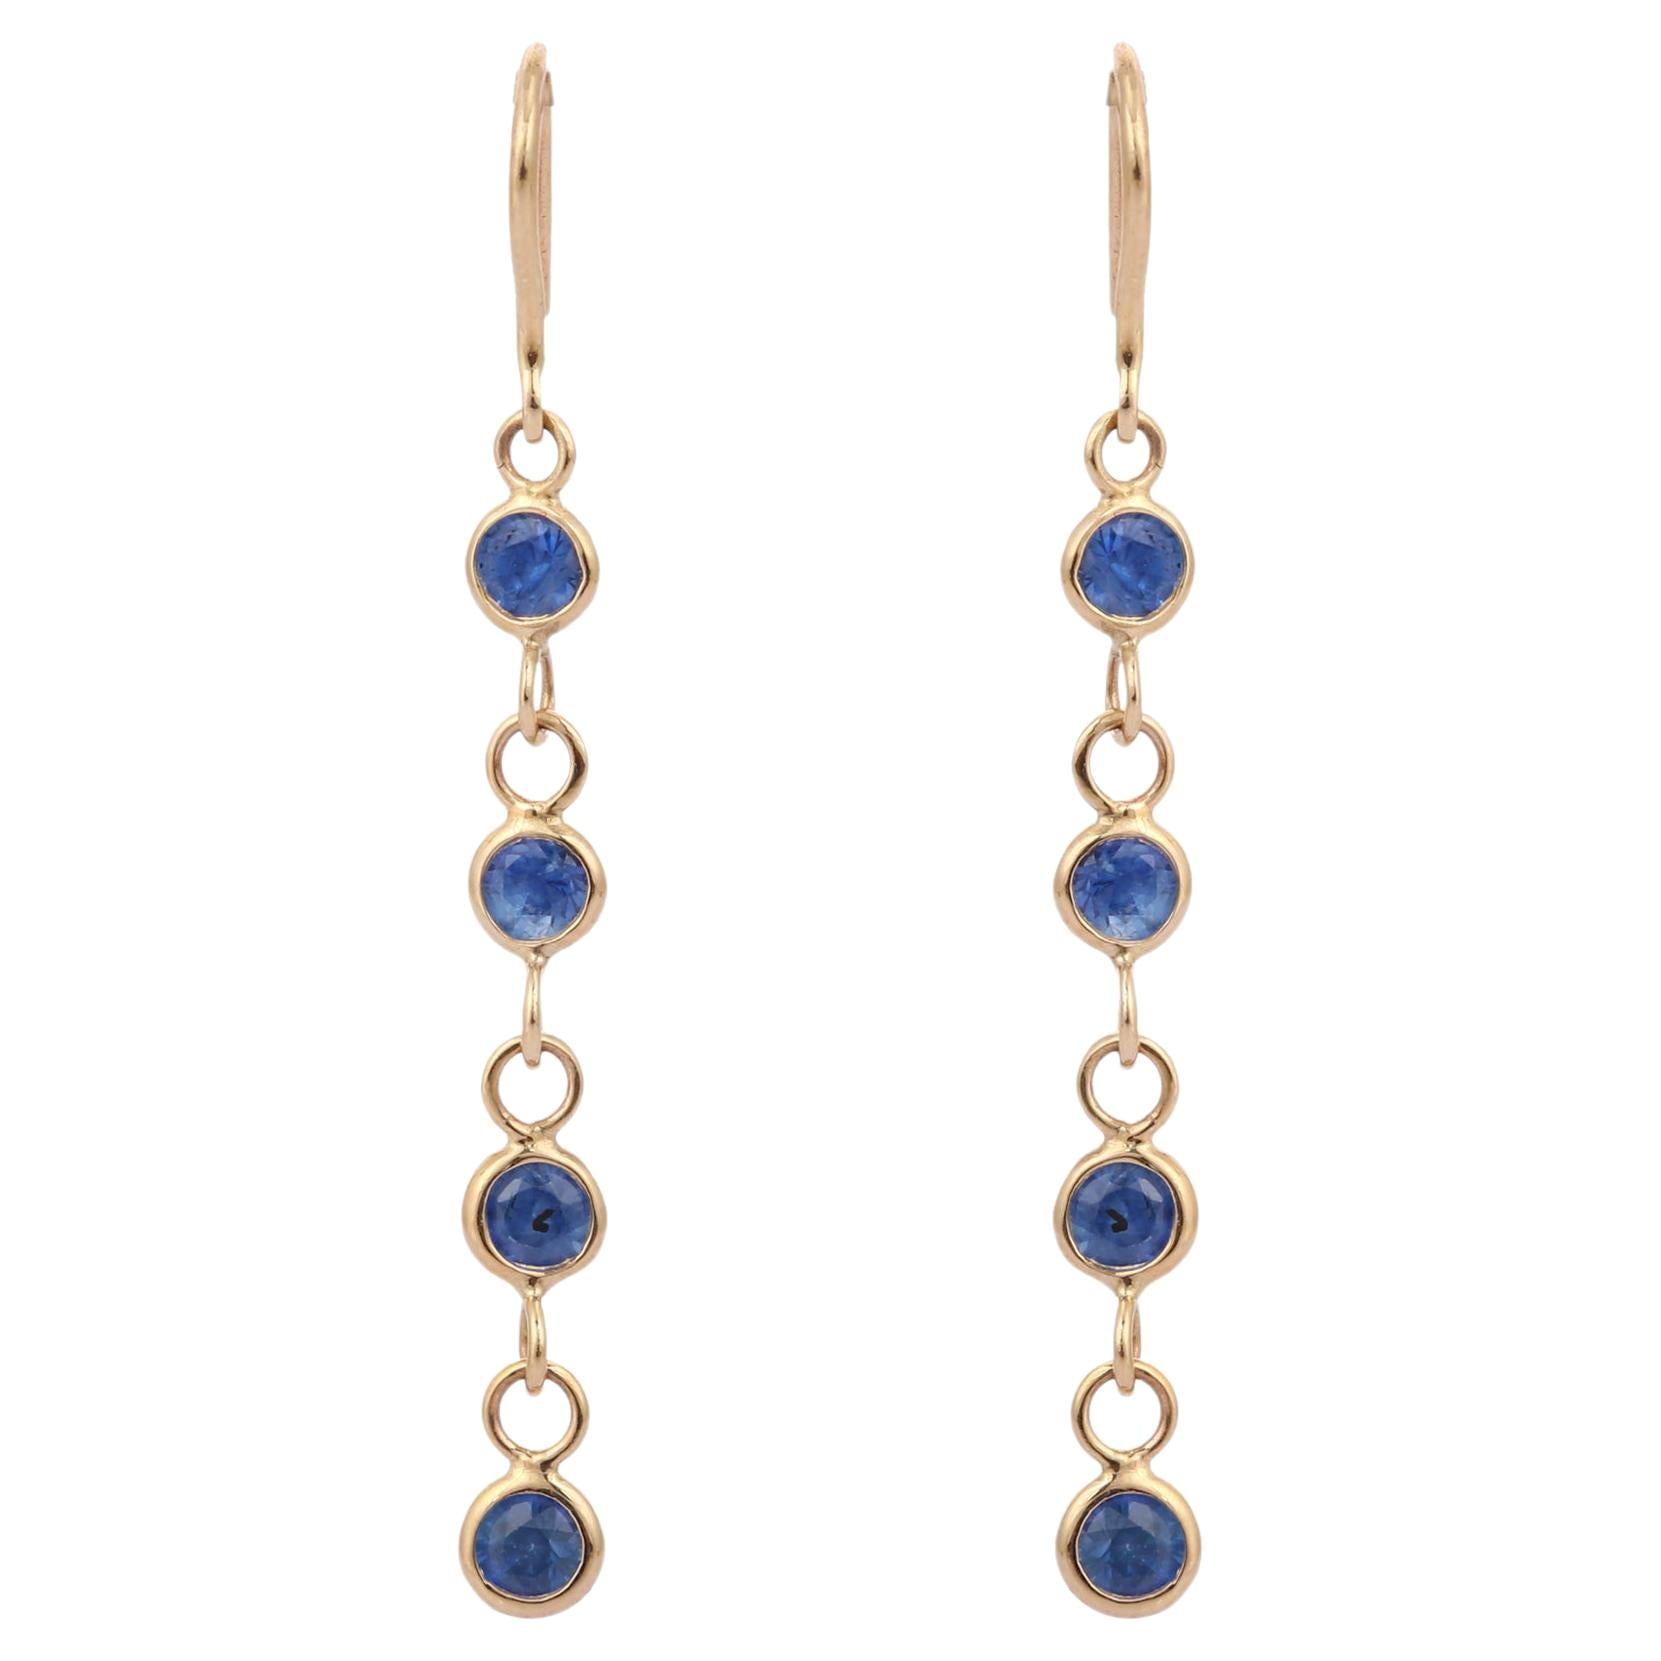 Natural Blue Sapphire Dangle Earrings in 18K Yellow Gold, Linear Dangle Earrings